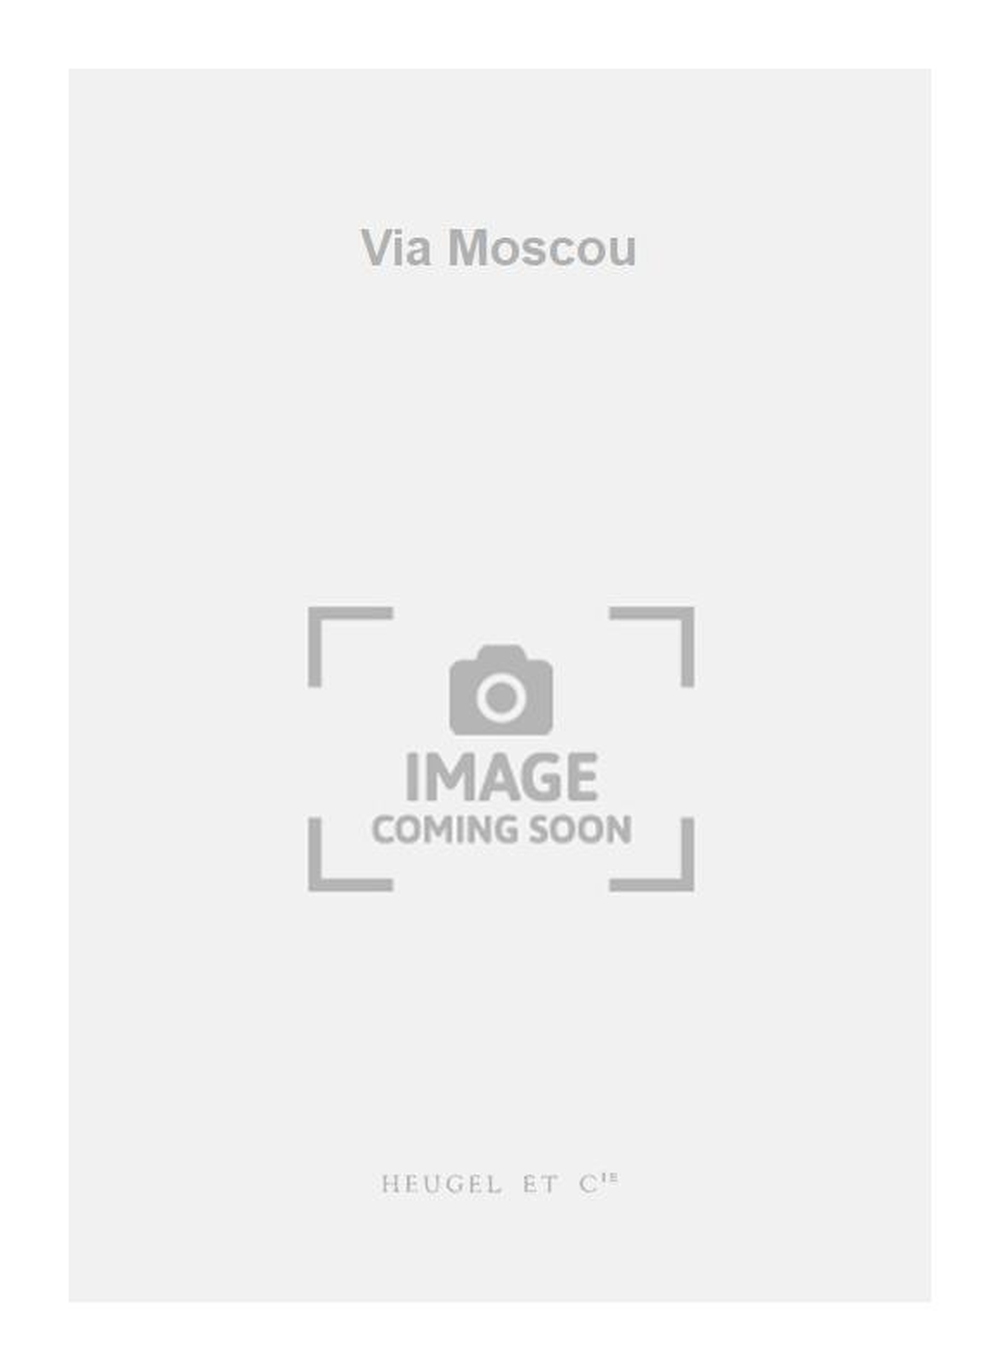 Yves Callier: Via Moscou